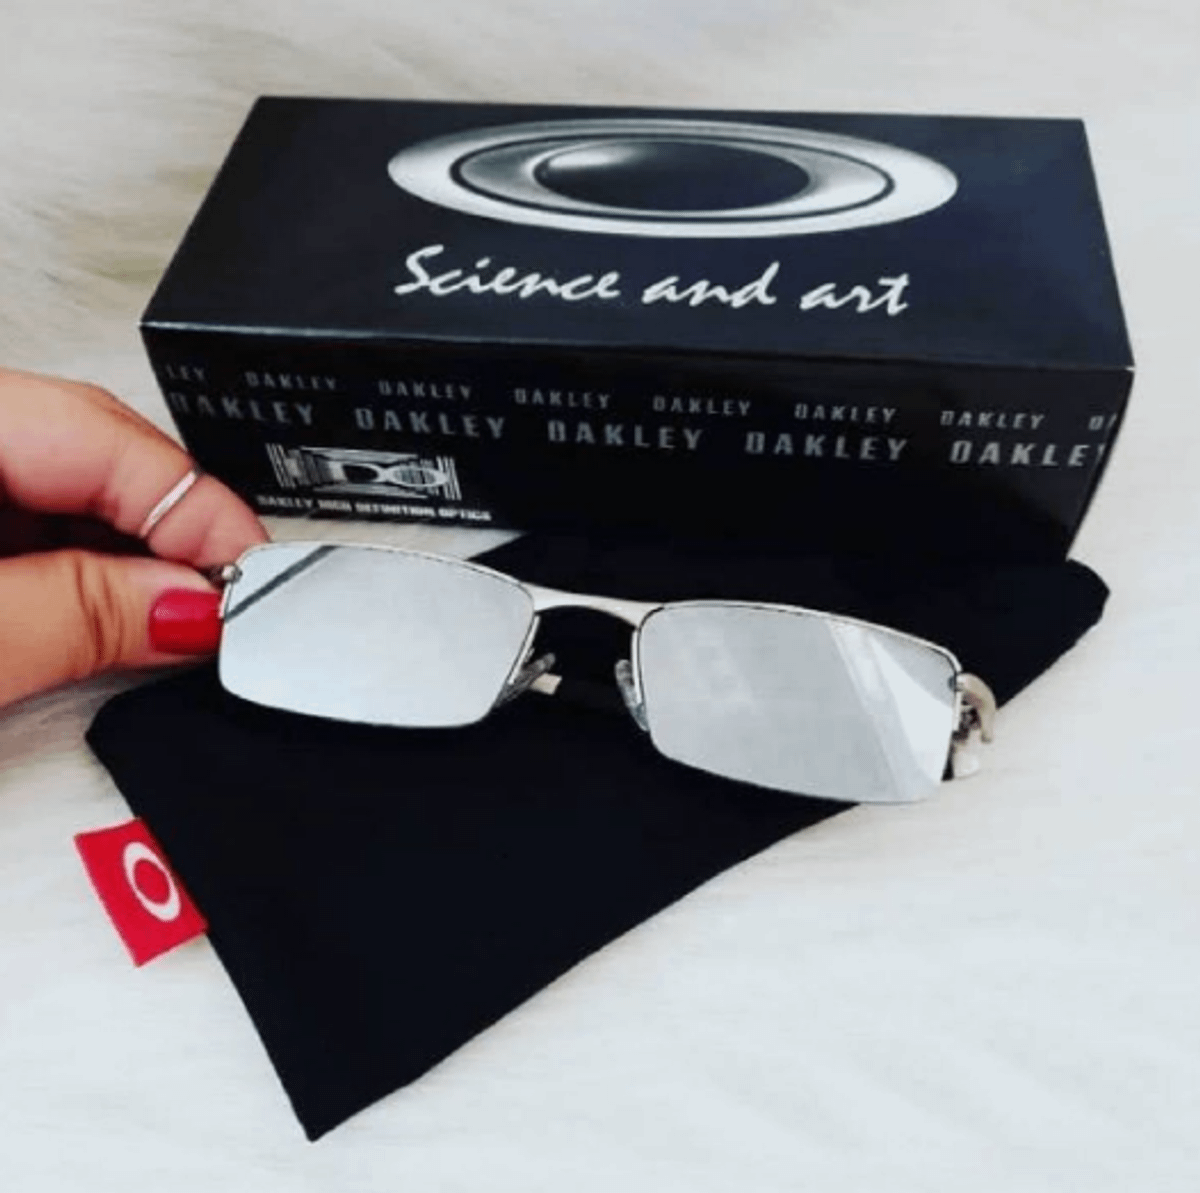 Óculos Sol Masculino Juliet Espelhado Esportivo - Carrefour